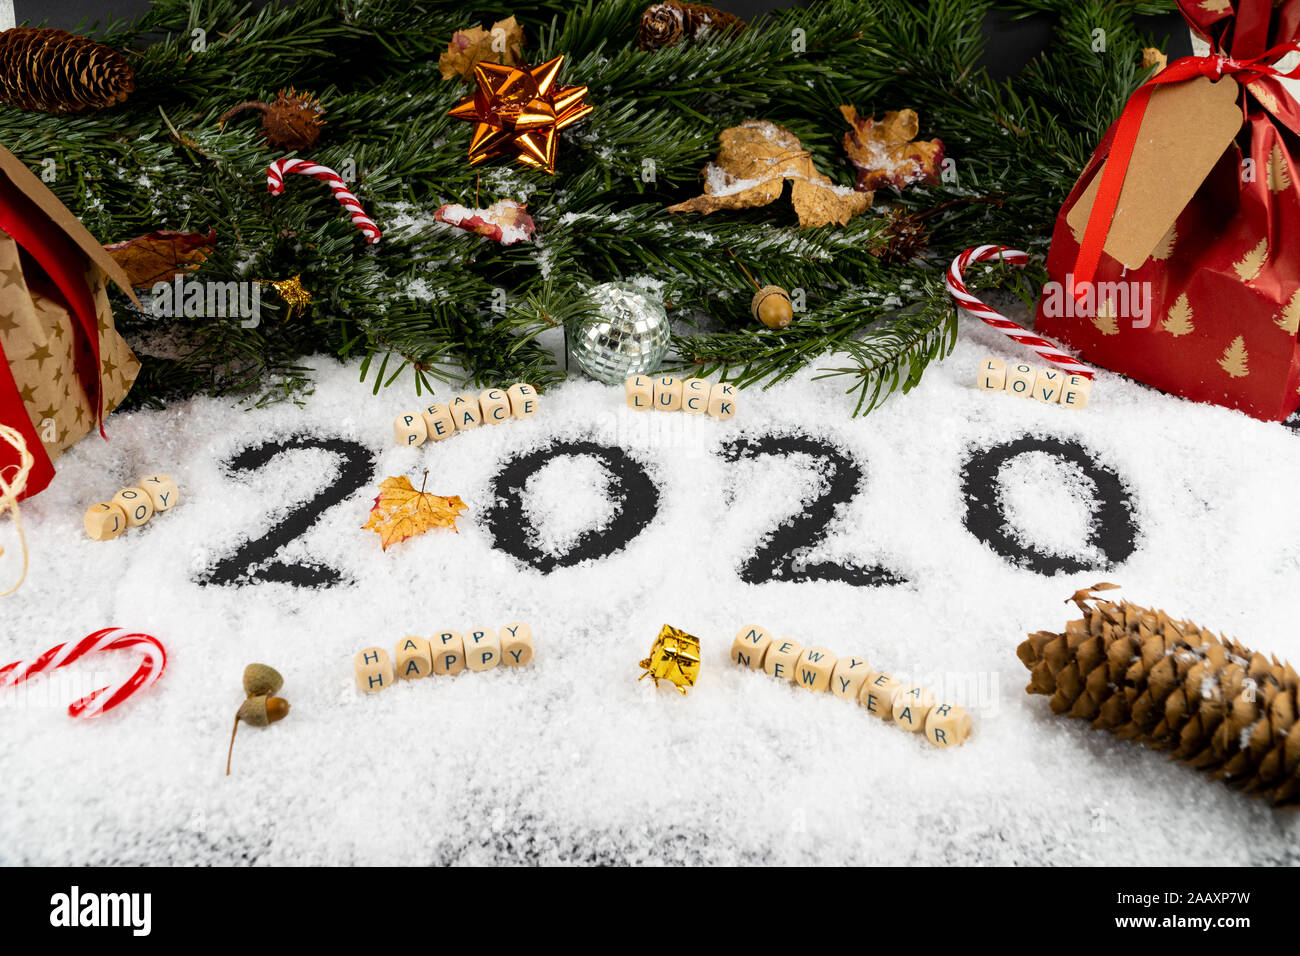 Eine Anordnung mit '2020' im Schnee in der vorderen geschrieben, gute Wünsche, wie Frieden, Glück, Liebe, Freude und einen guten Rutsch ins neue Jahr. Die Rückseite ist eingerichtet w Stockfoto